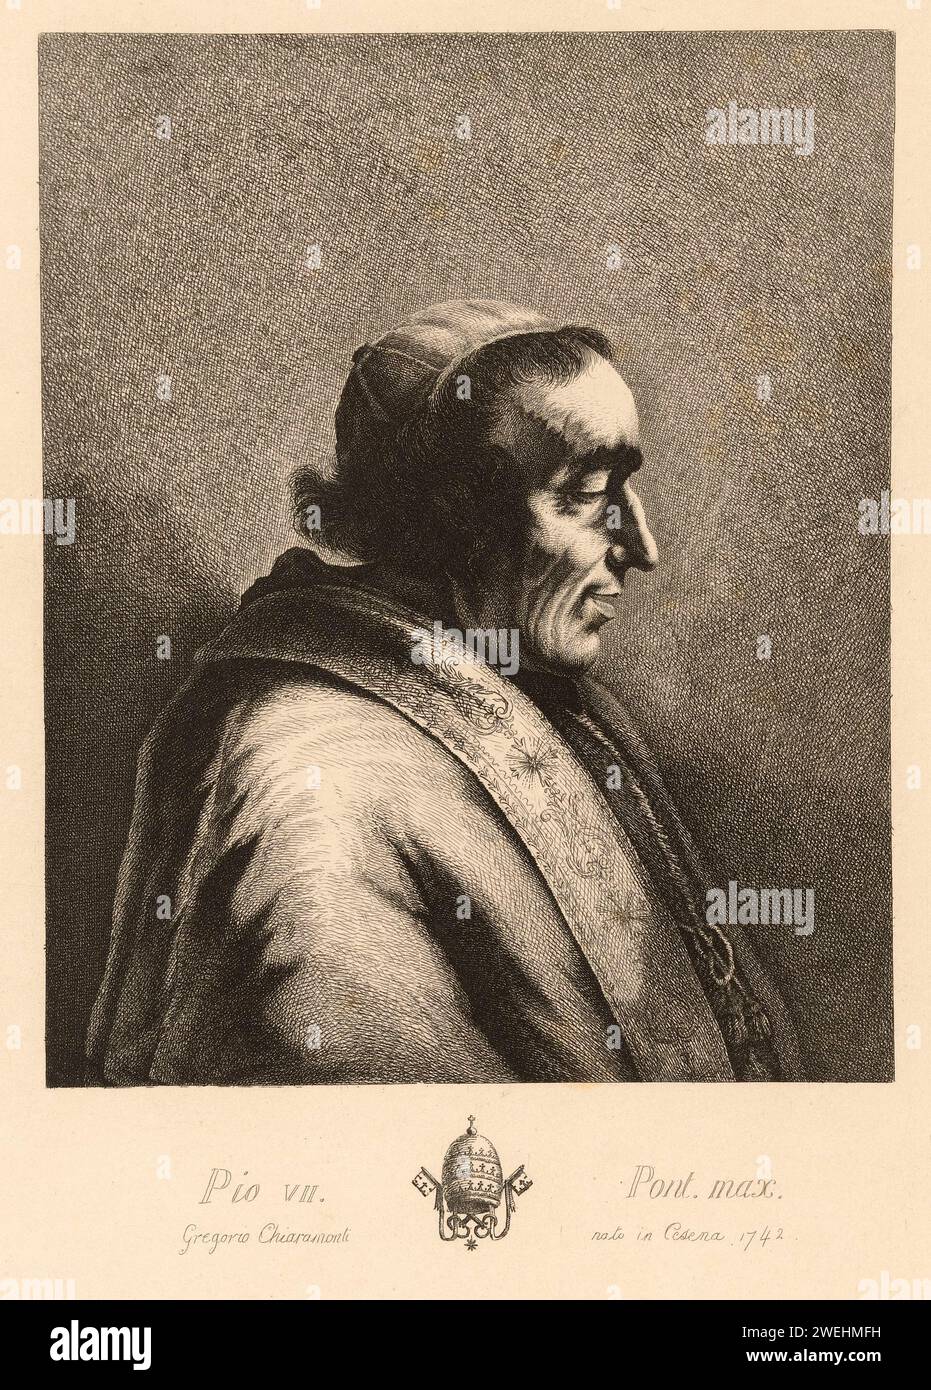 1820 c. , ROME , ITALIE : le Pape PIE VII ( PIO VII , 1742 - 1823 ), né comte Barnaba Niccolò Maria Luigi Gregorio Chiaramonti . Était pape de 1800 à sa mort 1823 . Était le 251 ème Pape de l'Église catholique . Portrait par graveur inconnu, d'après Jean Jacques de Boissieu ( 1805 - 1899 ). - Papam - PAPA - RELIGIONE CATTOLICA - RELIGION CATHOLIQUE - ritratto - portrait - incisione - illustration - illustrazione - CITÉ DU VATICAN - VATICANO - HISTOIRE - FOTO STORICHE --- Archivio GBB Banque D'Images